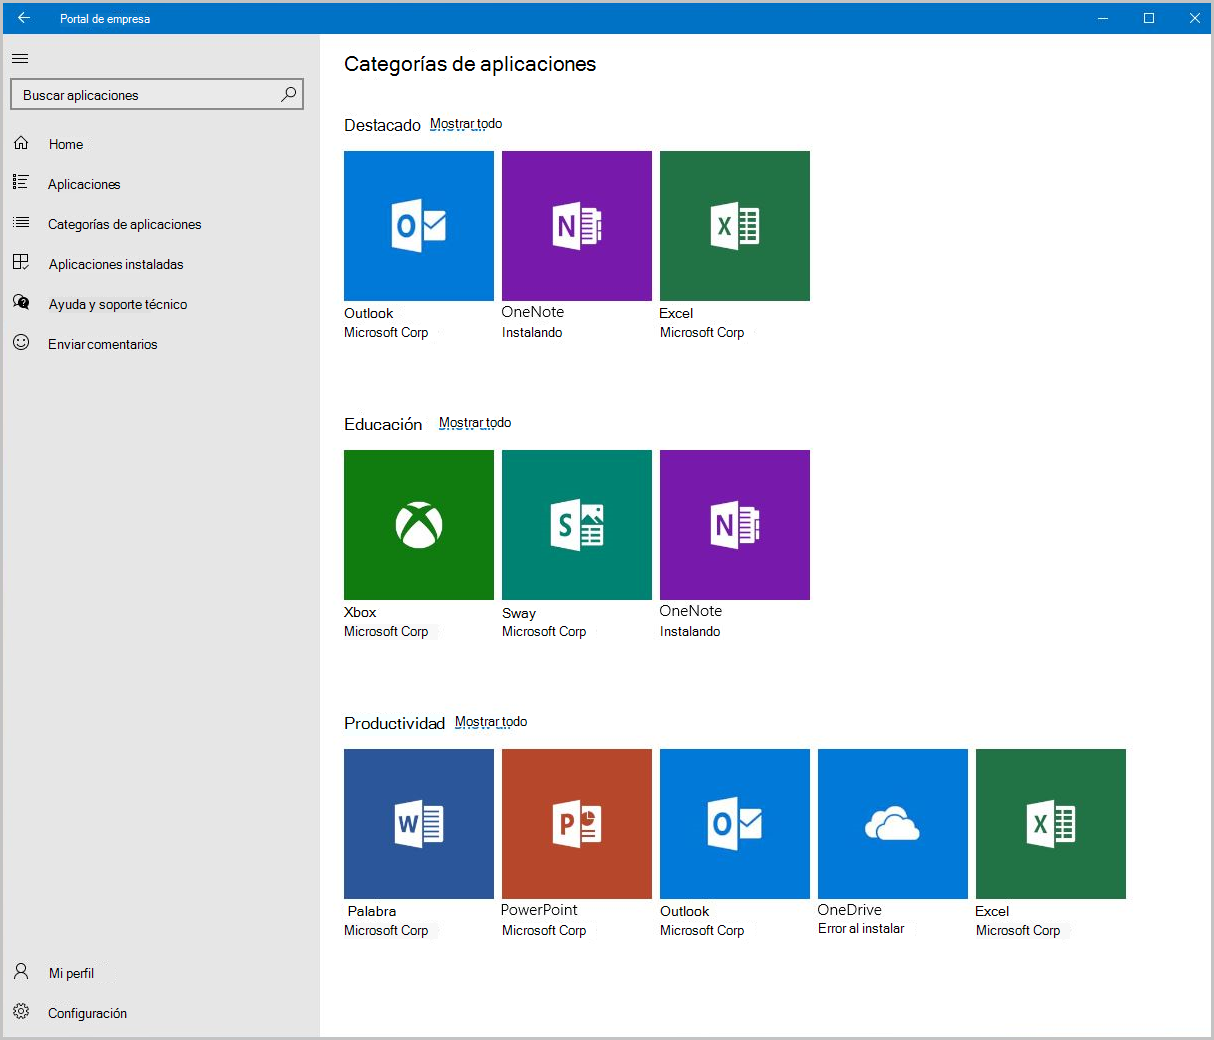 Captura de pantalla de la pantalla de categorías de aplicaciones del Portal de empresa para Windows 10.